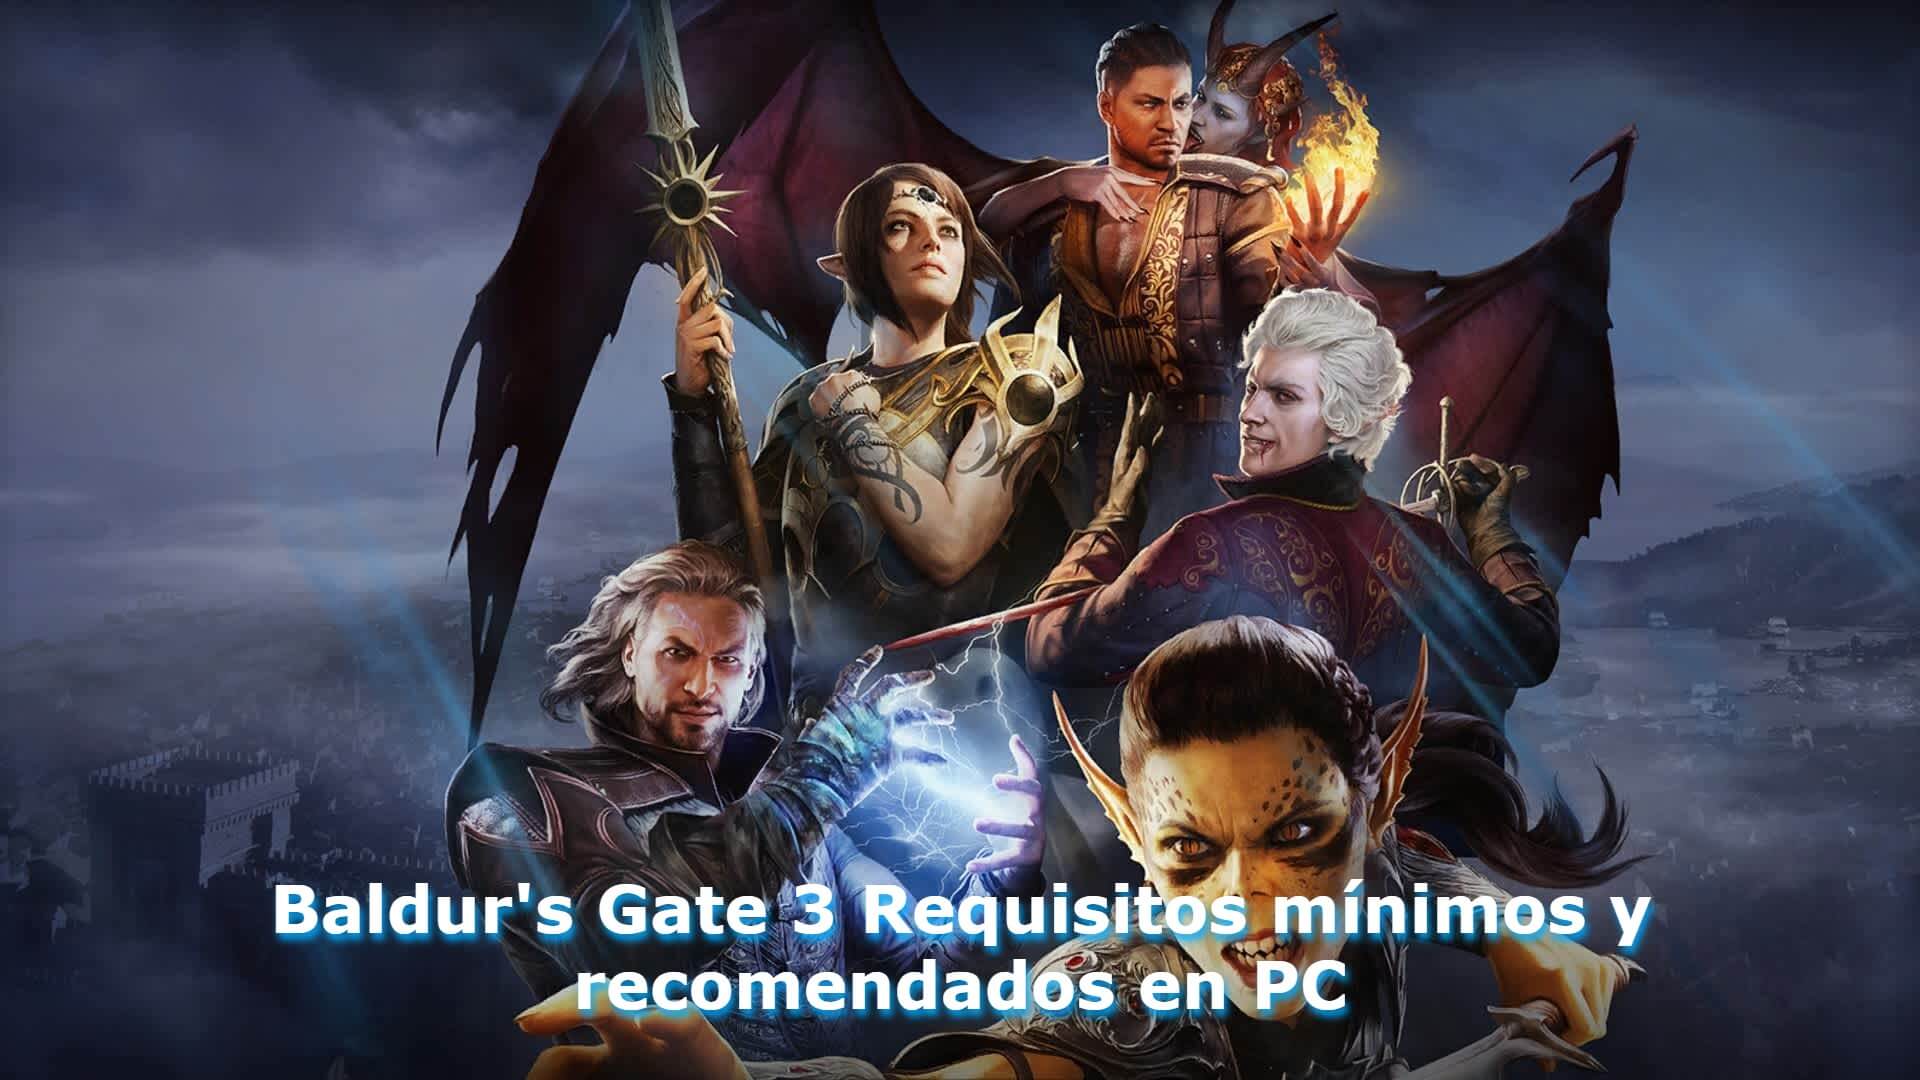 Baldur's Gate 3 Requisitos mínimos y recomendados en PC